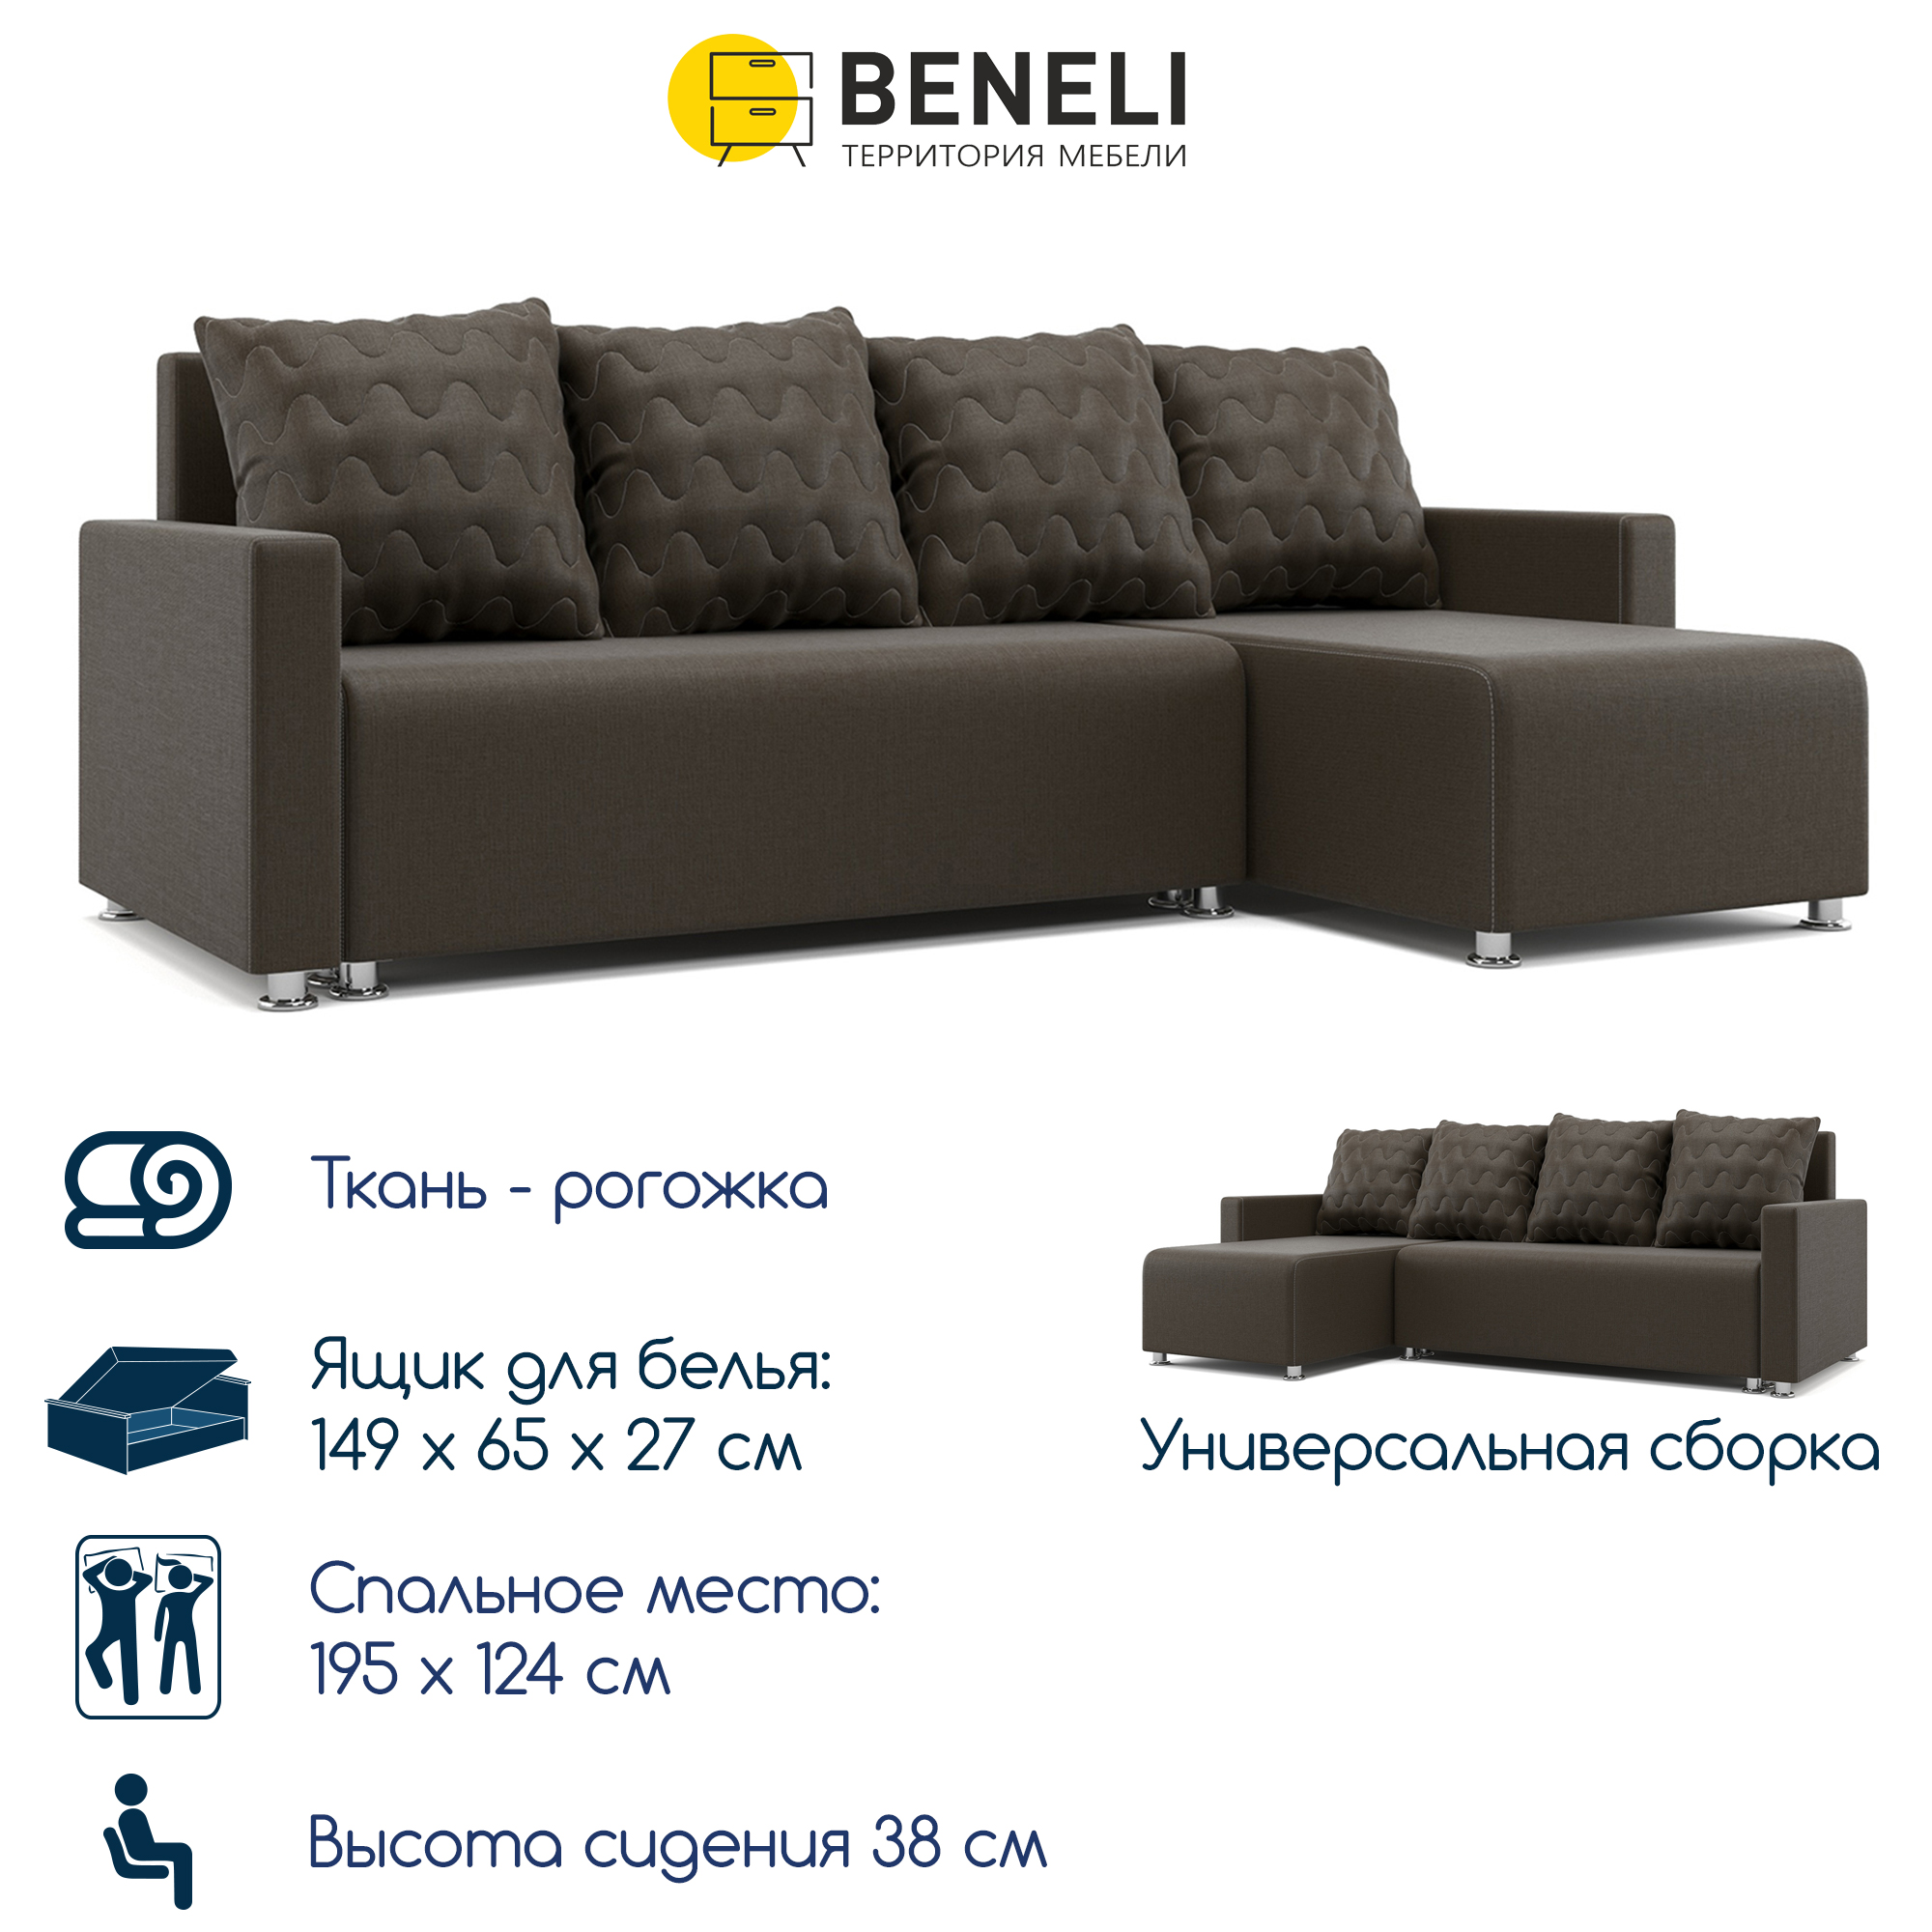 Универсальный угловой диван-кровать Beneli Челси 2